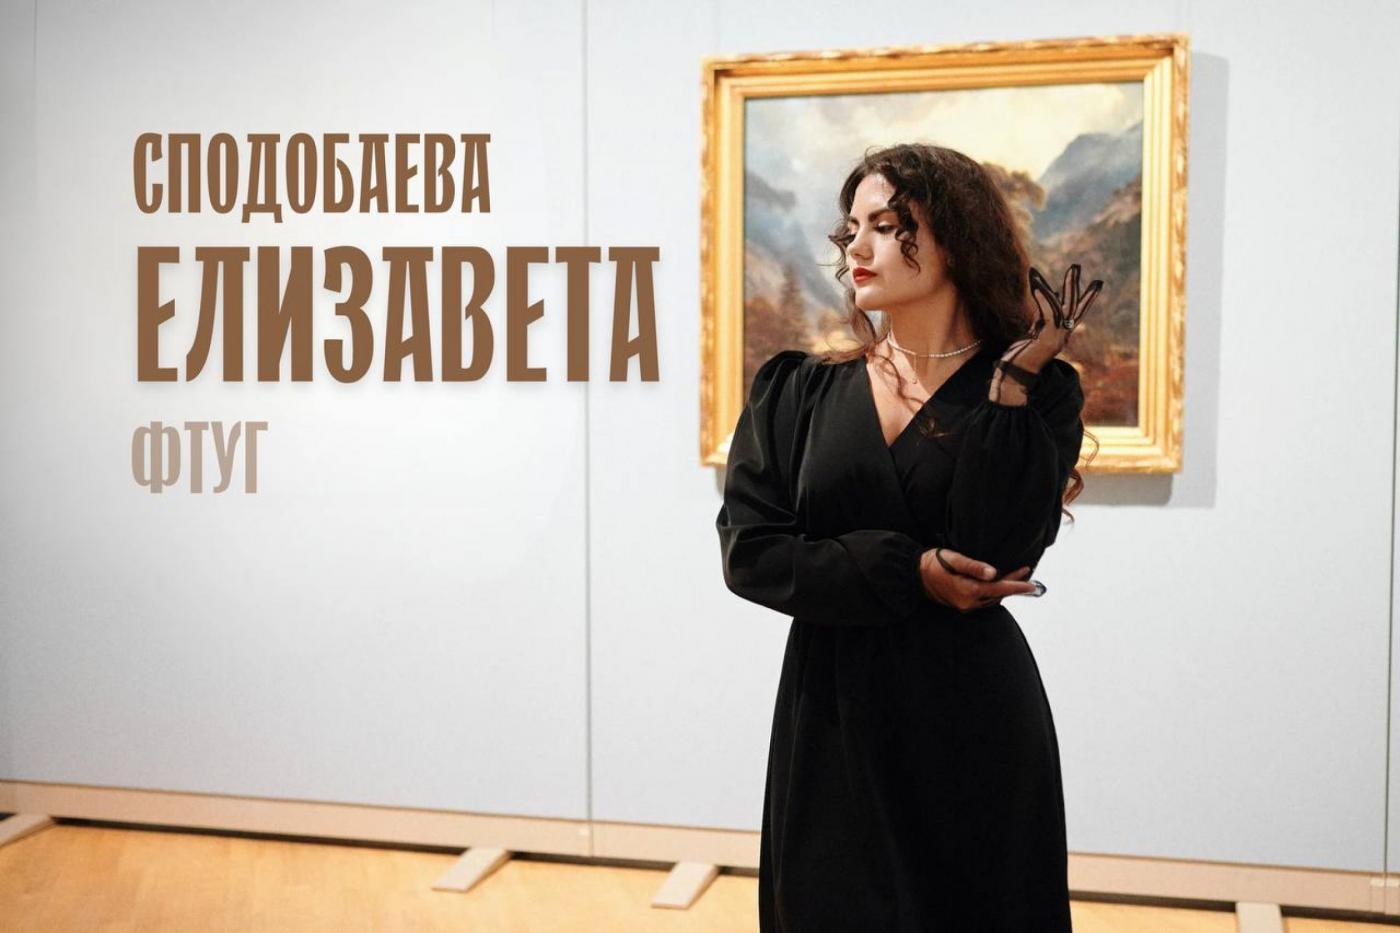 Десять граней искусства: Елизавета Сподобаева и театр